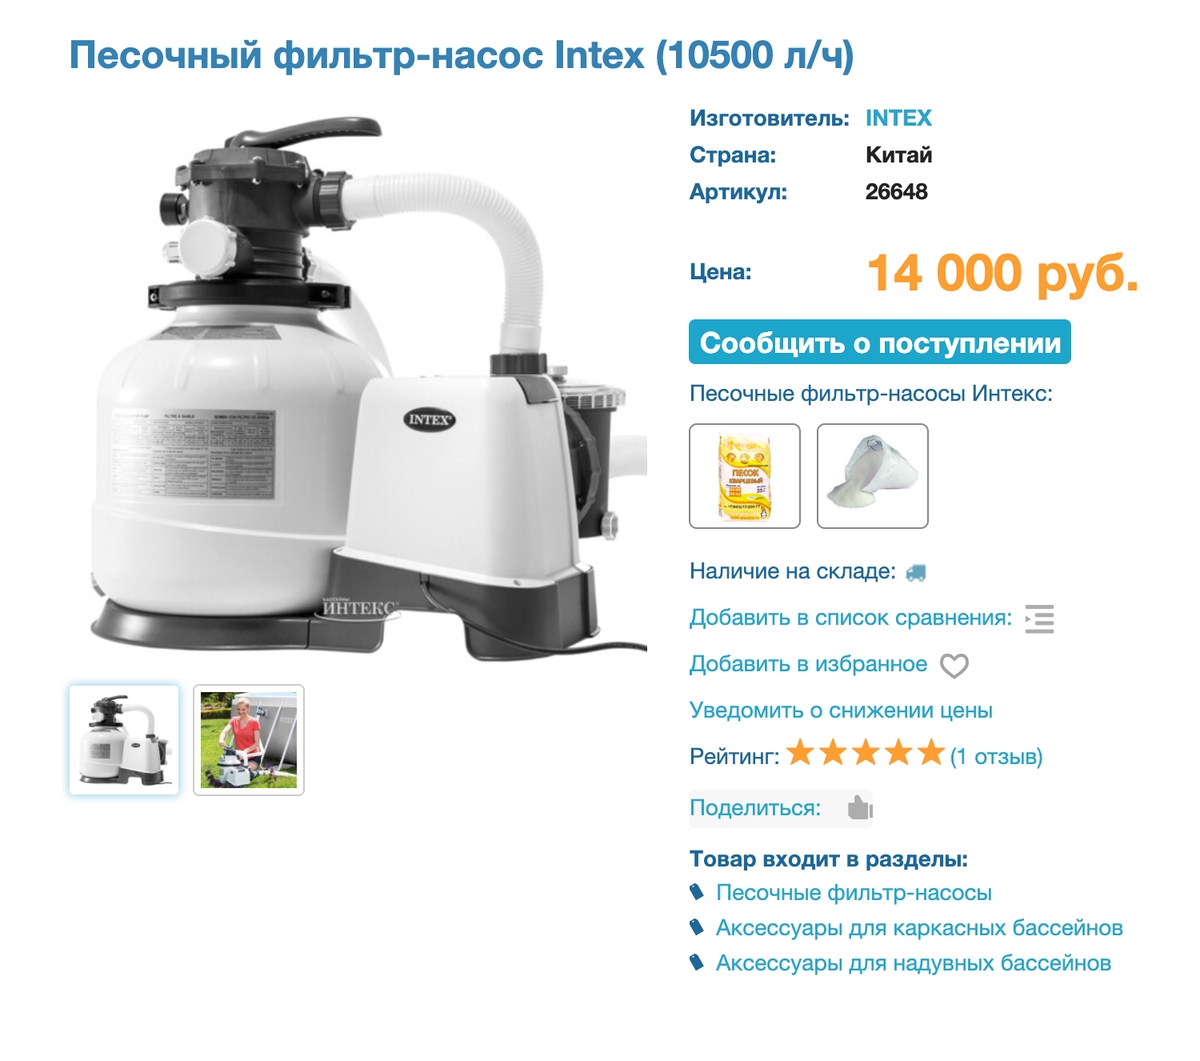 Песочные фильтр-насосы можно приобрести на сайтах, где продают бассейны. Фирма Intex предлагает фильтры от 14 000 <span class=ruble>Р</span>. Источник: Intex